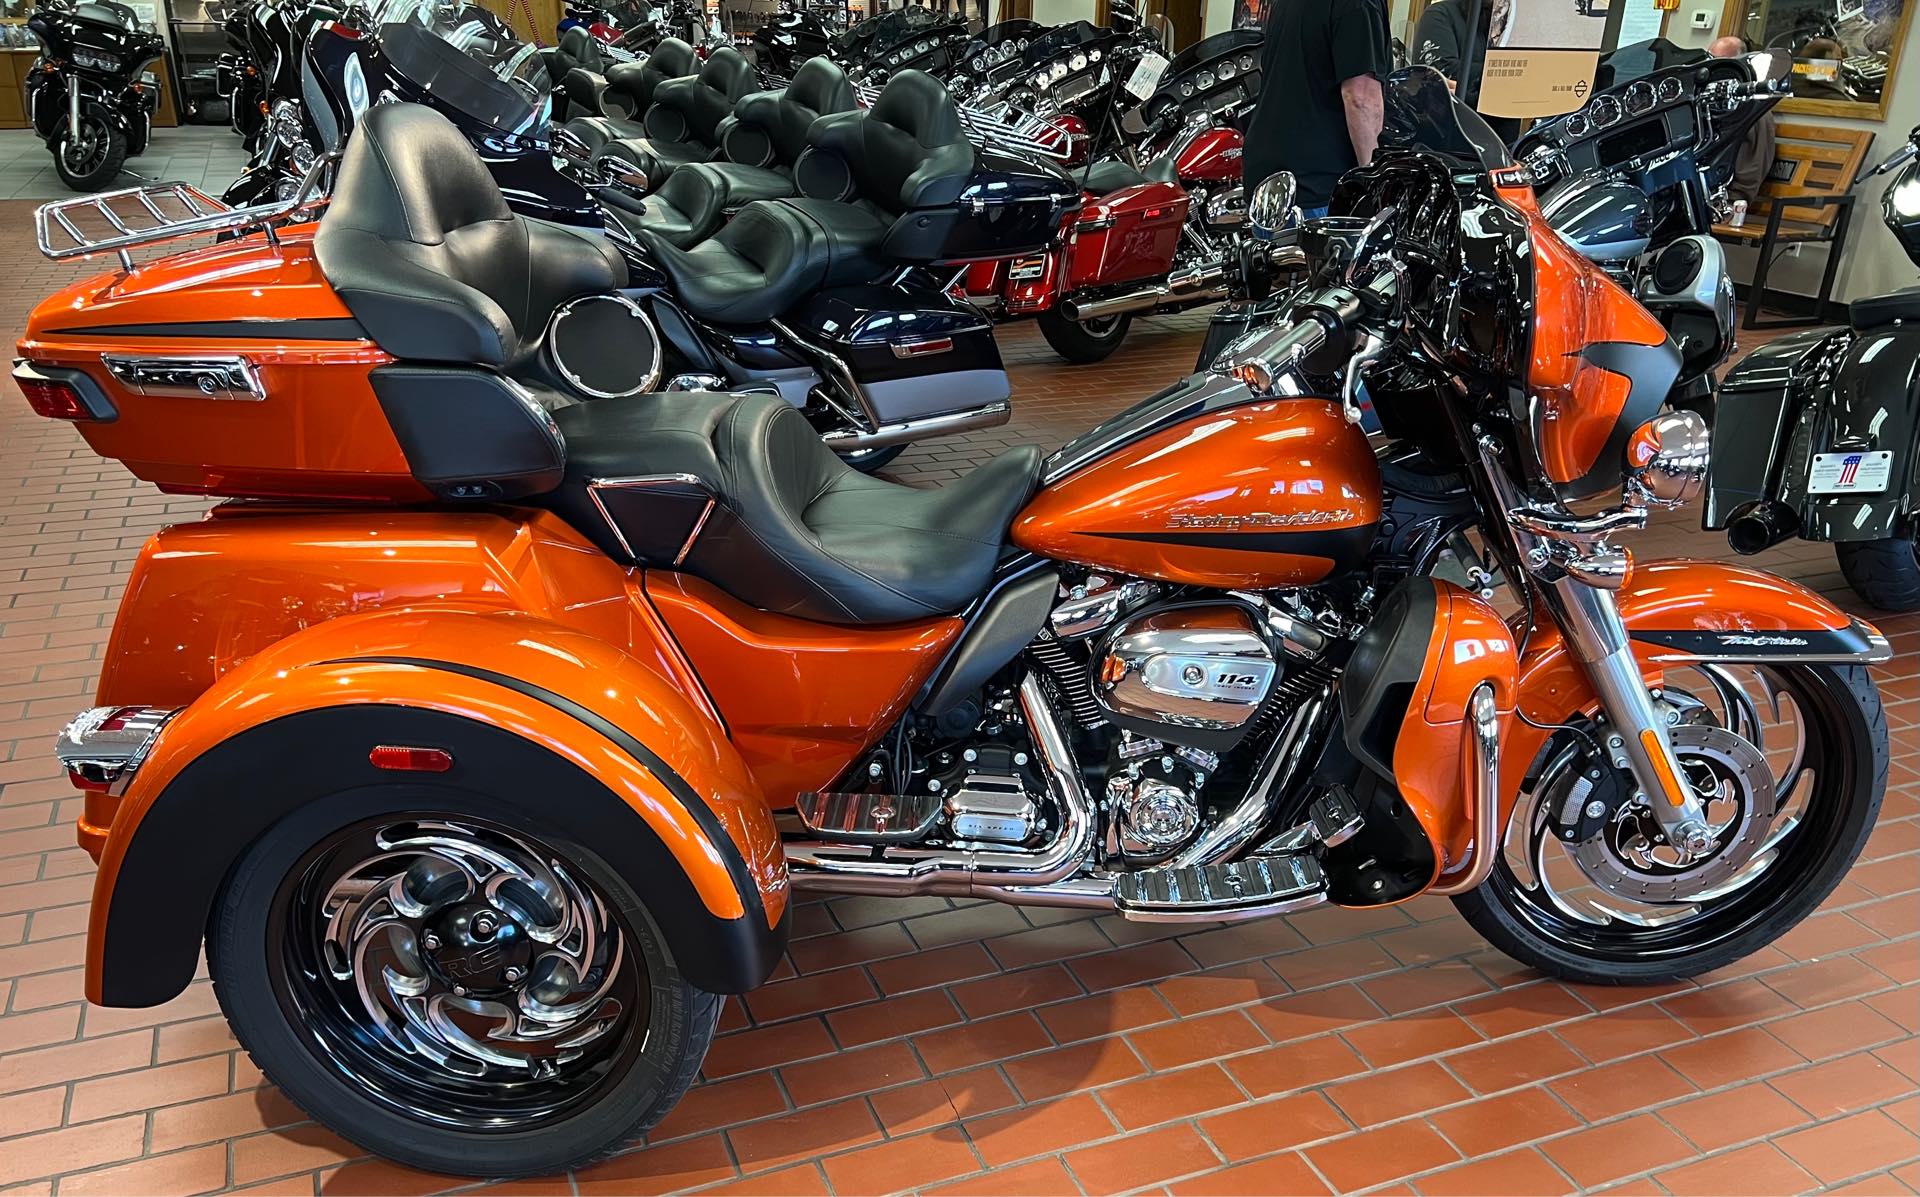 2019 Harley-Davidson Trike Tri Glide Ultra at Rooster's Harley Davidson